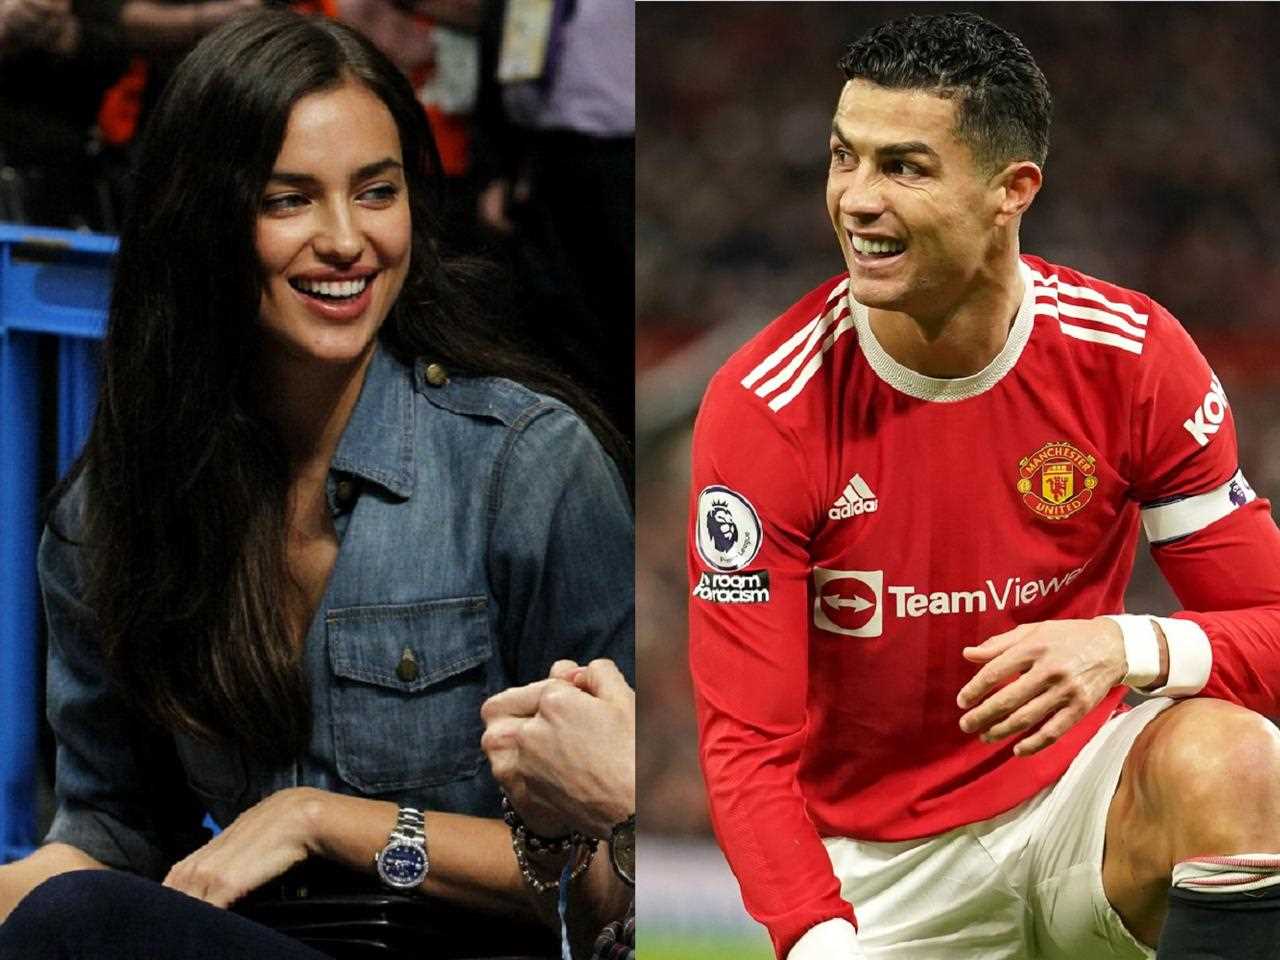 Życie prywatne Cristiano Ronaldo: kim jest jego żona i jak wygląda ich życie?